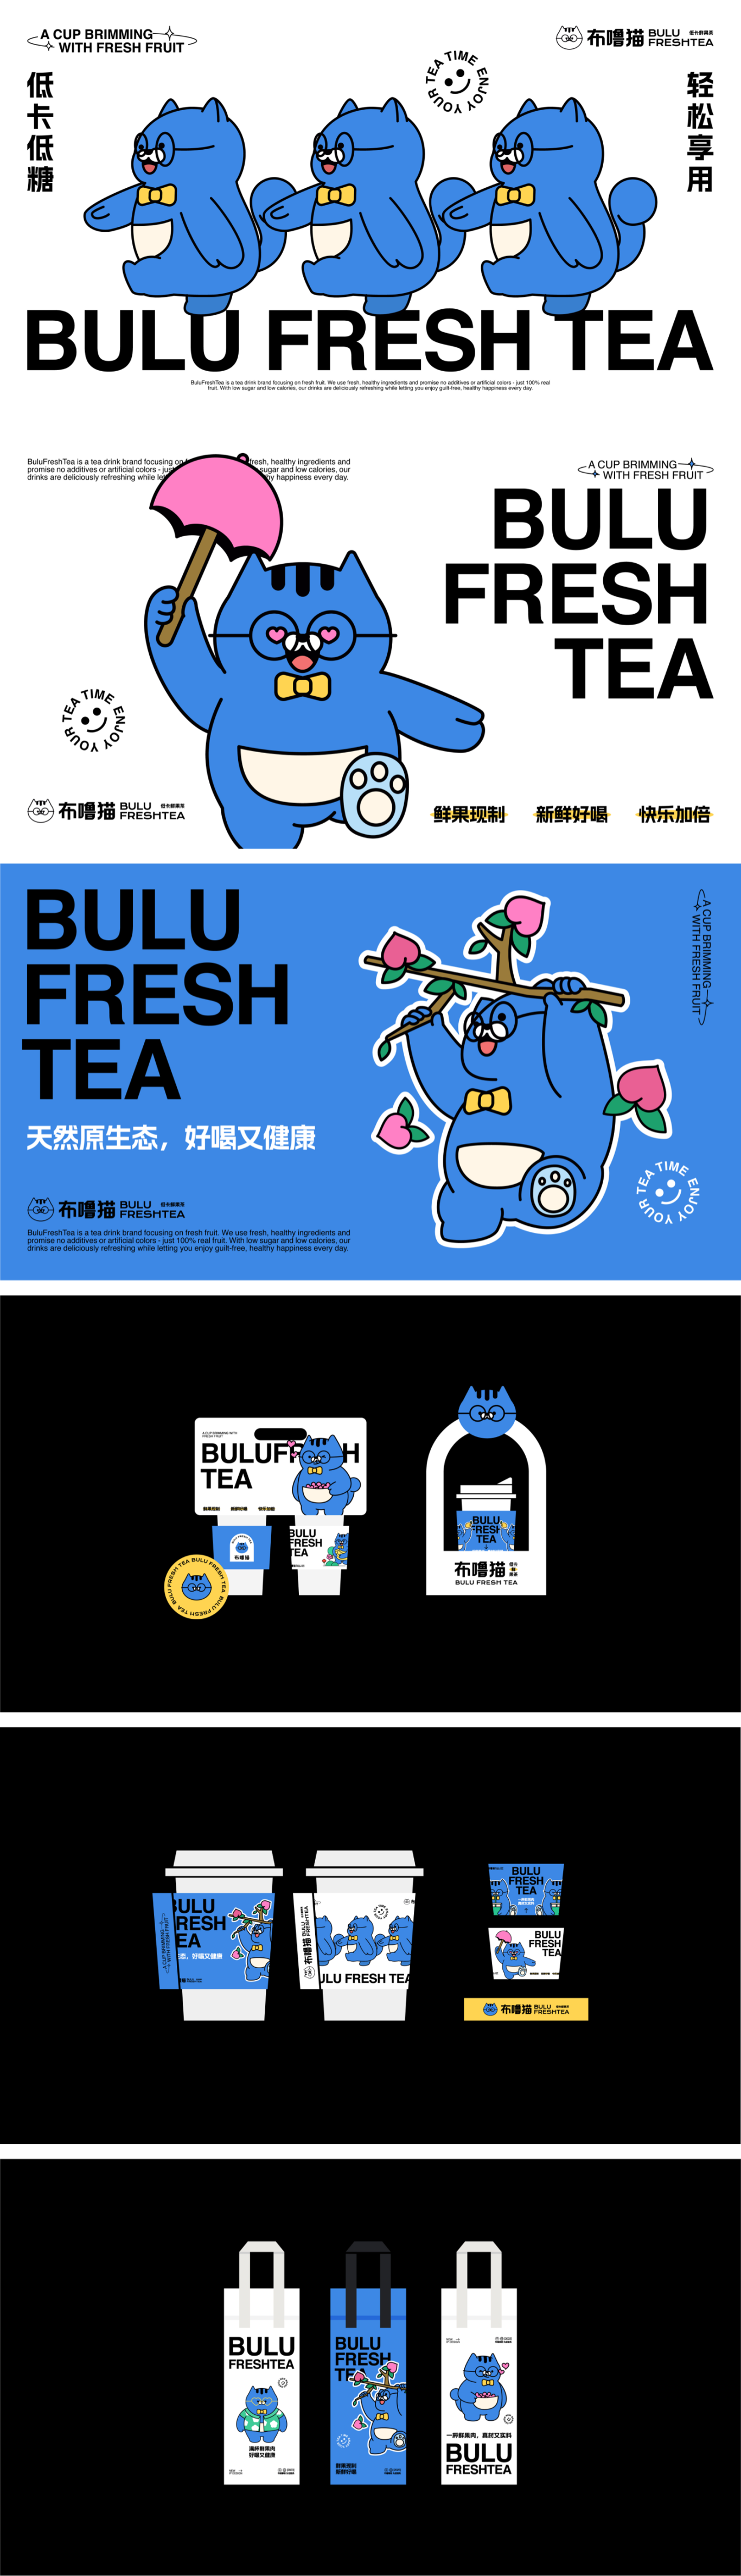 布嚕貓茶飲品牌全案設計圖4